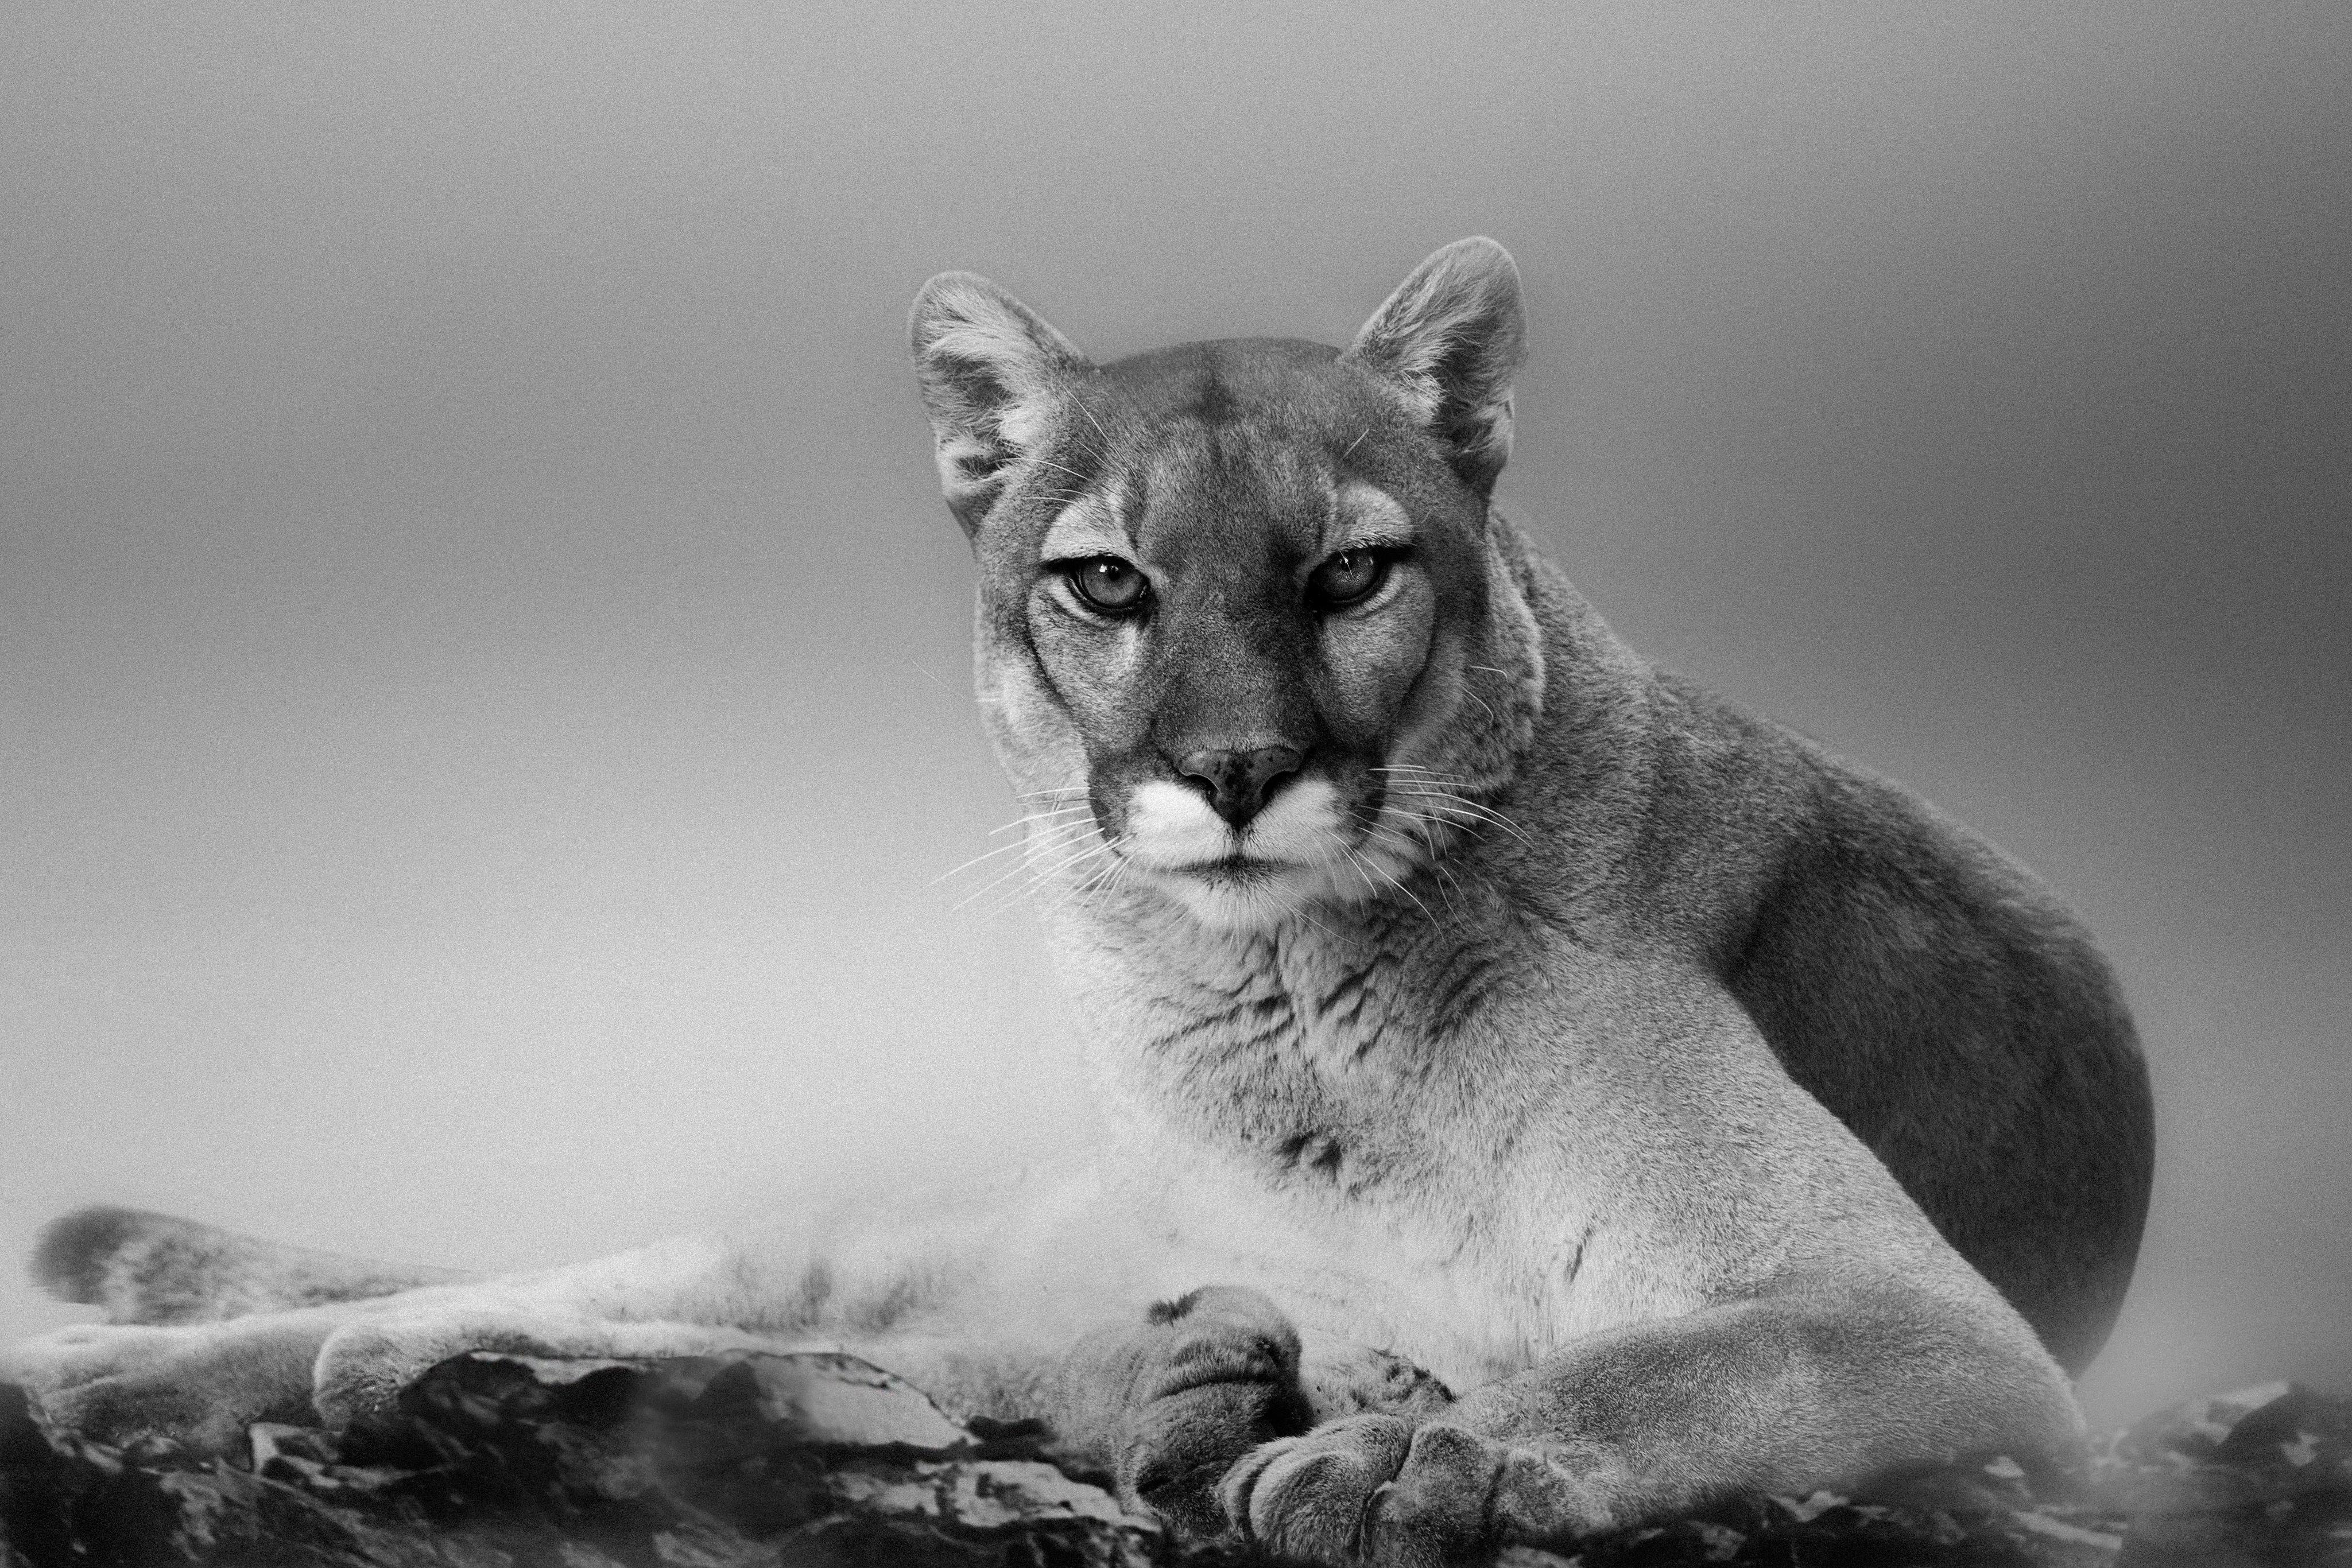 Black and White Photograph Shane Russeck - Impression au Cougar 24x36 cm - Photographie d'art d'un lion de montagne, Cougar Western Art